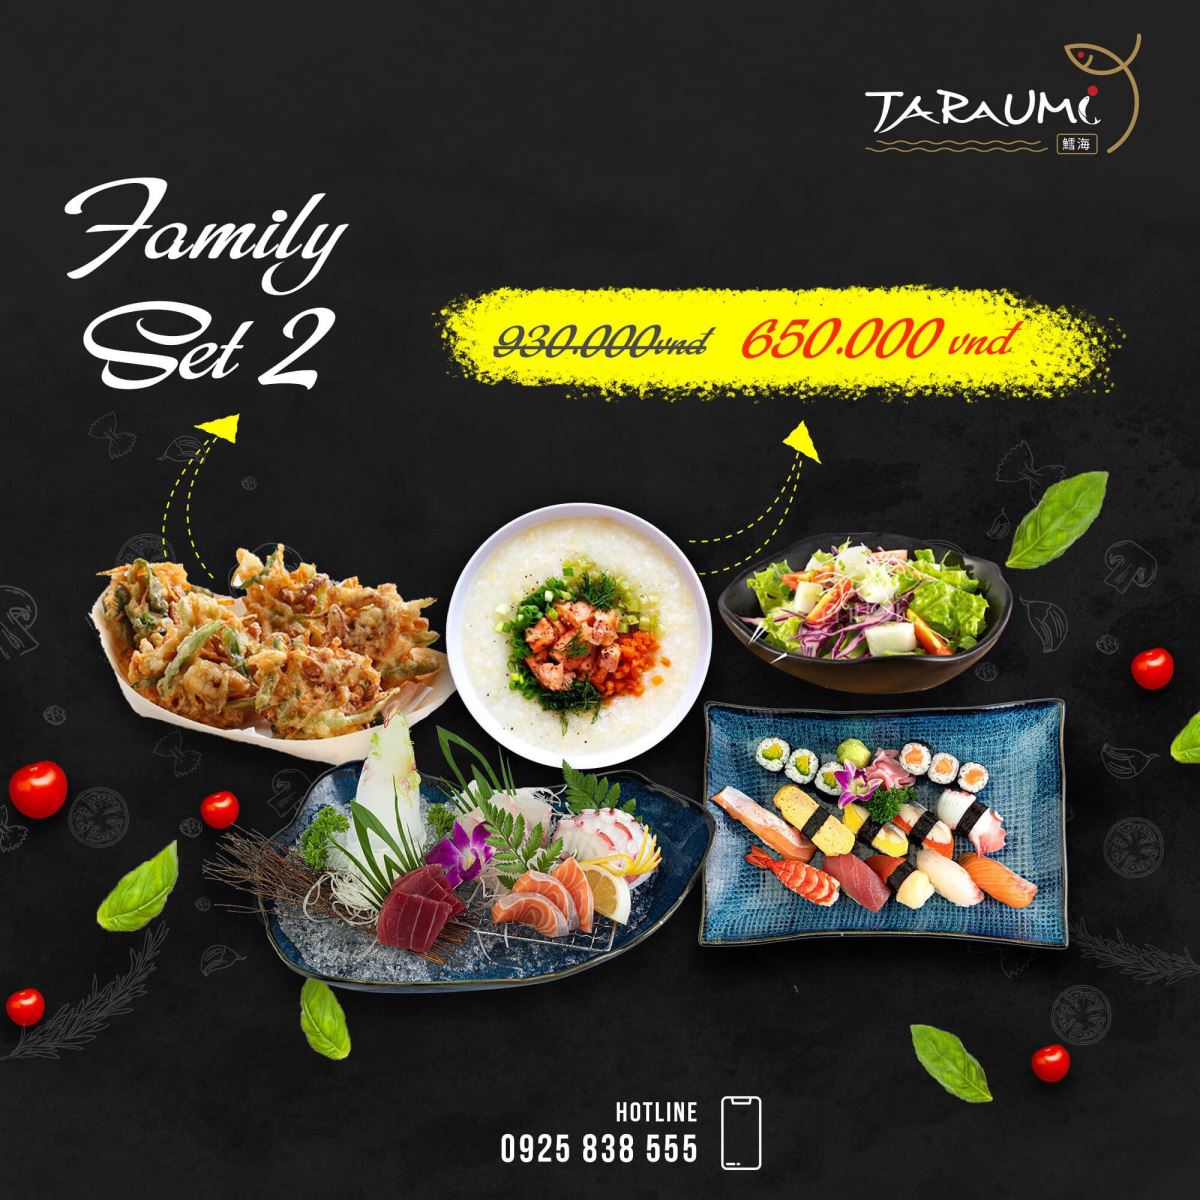 Family set 2 của nhà hàng Taraumi